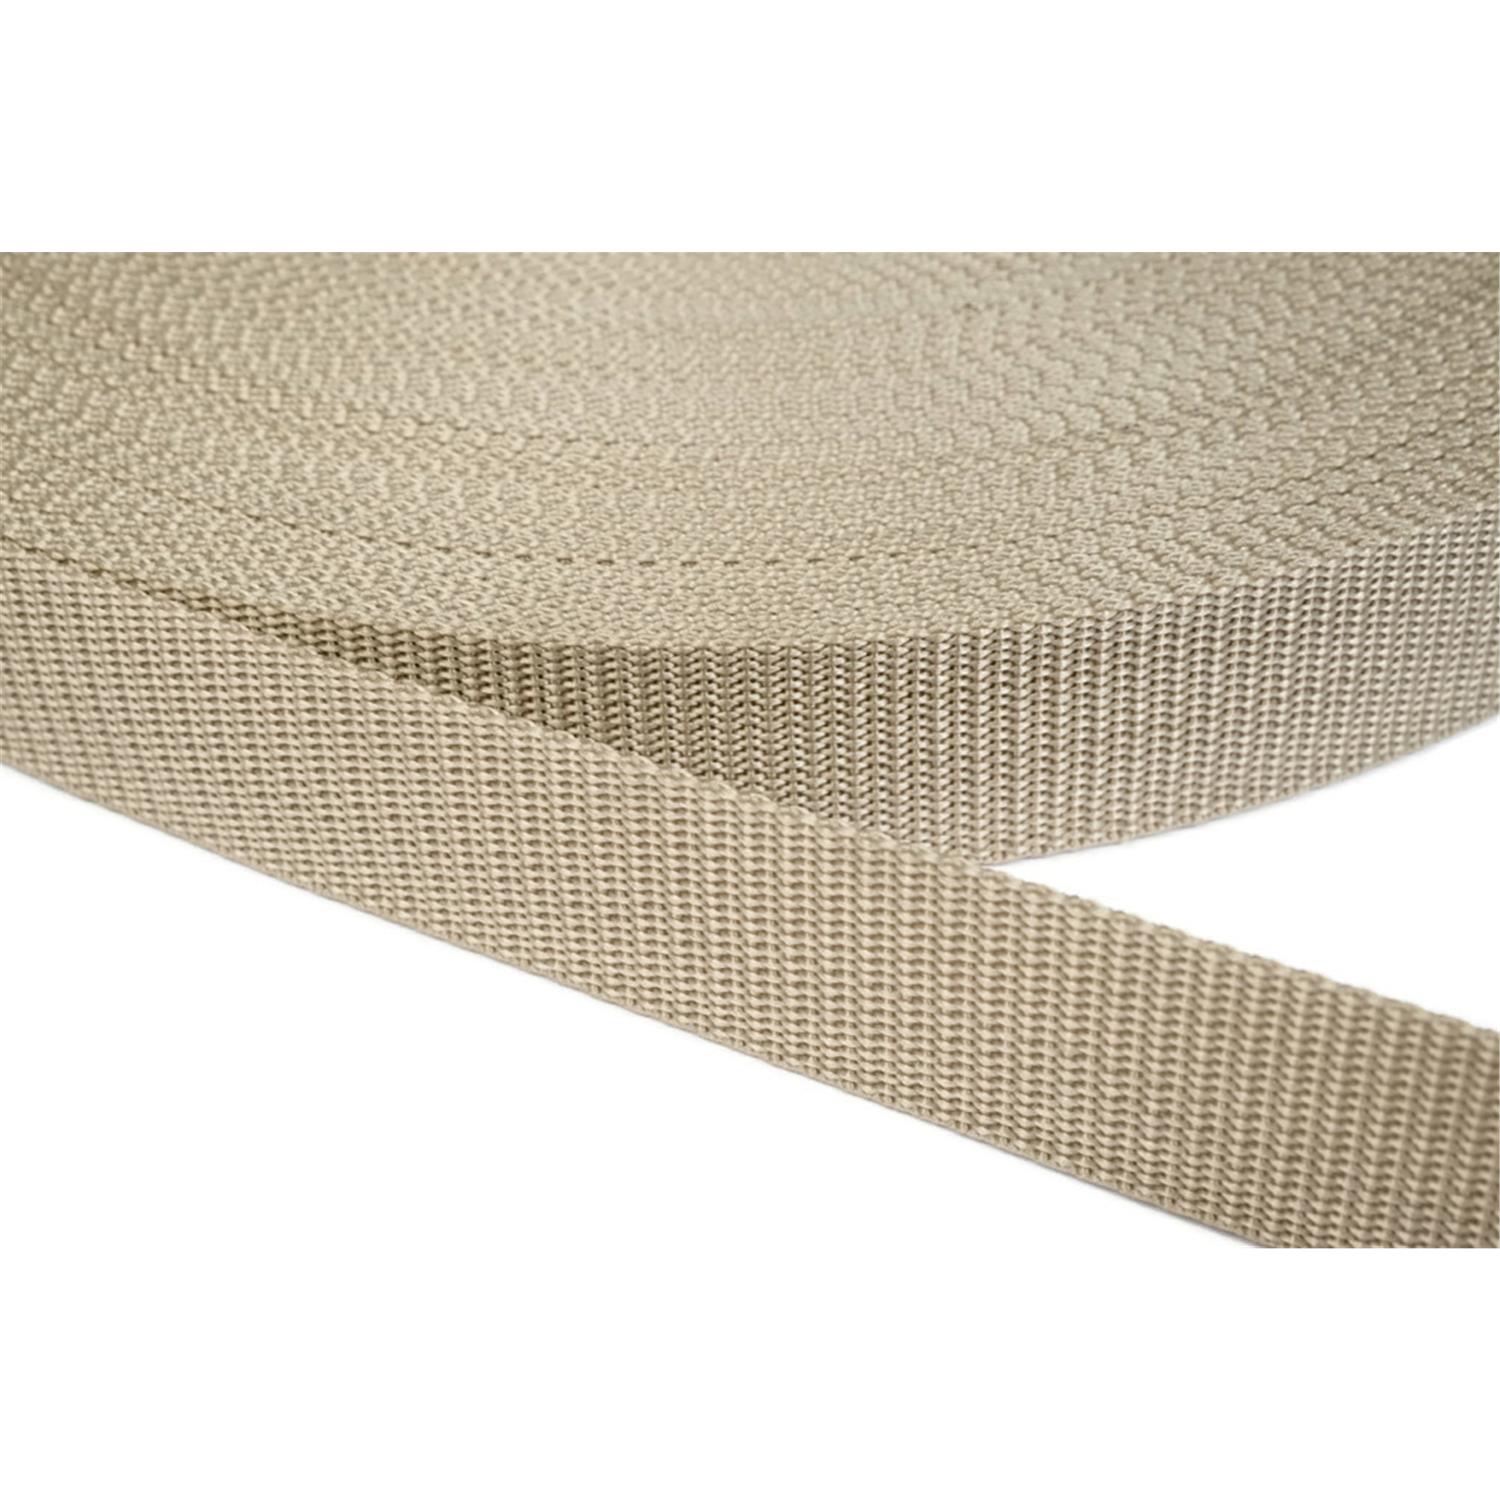 Gurtband 15mm breit aus Polypropylen in 41 Farben 03 - beige 12 Meter